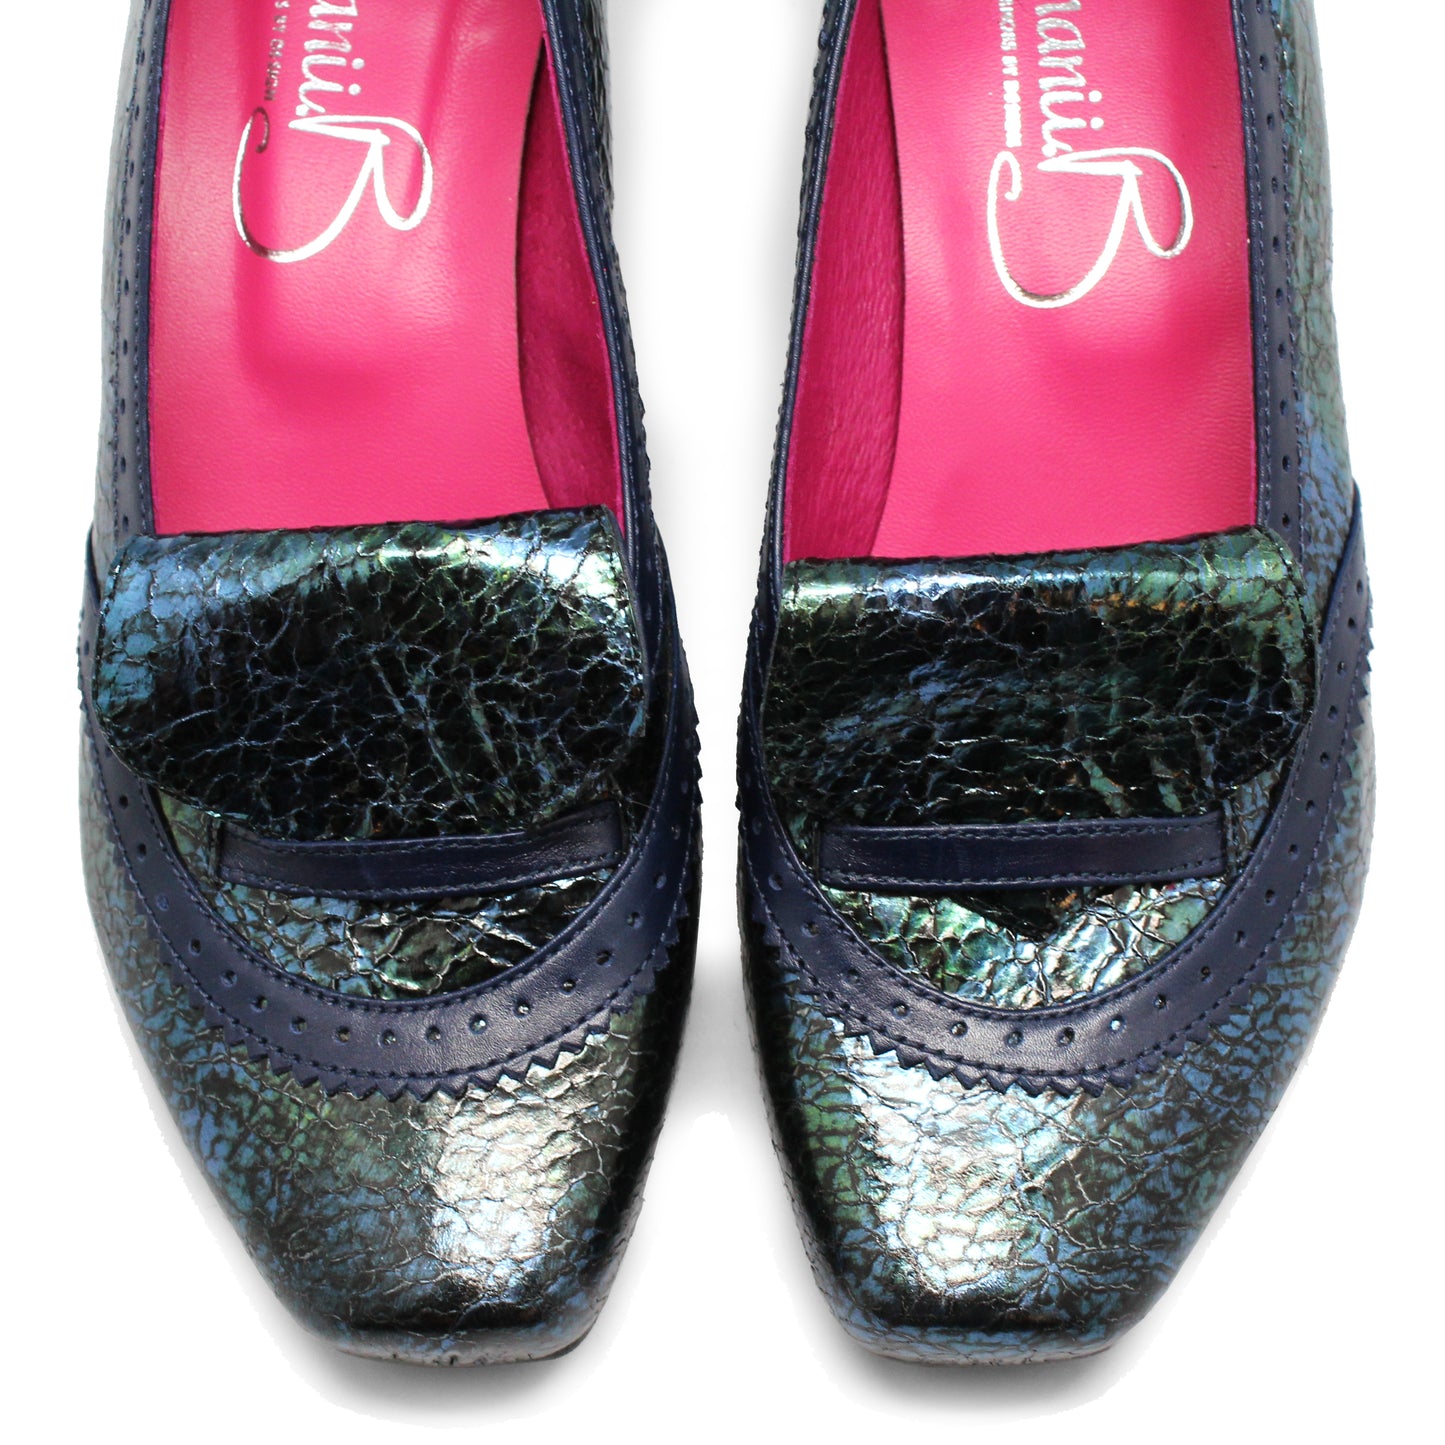 Persi - Azule Crack Low heel shoe